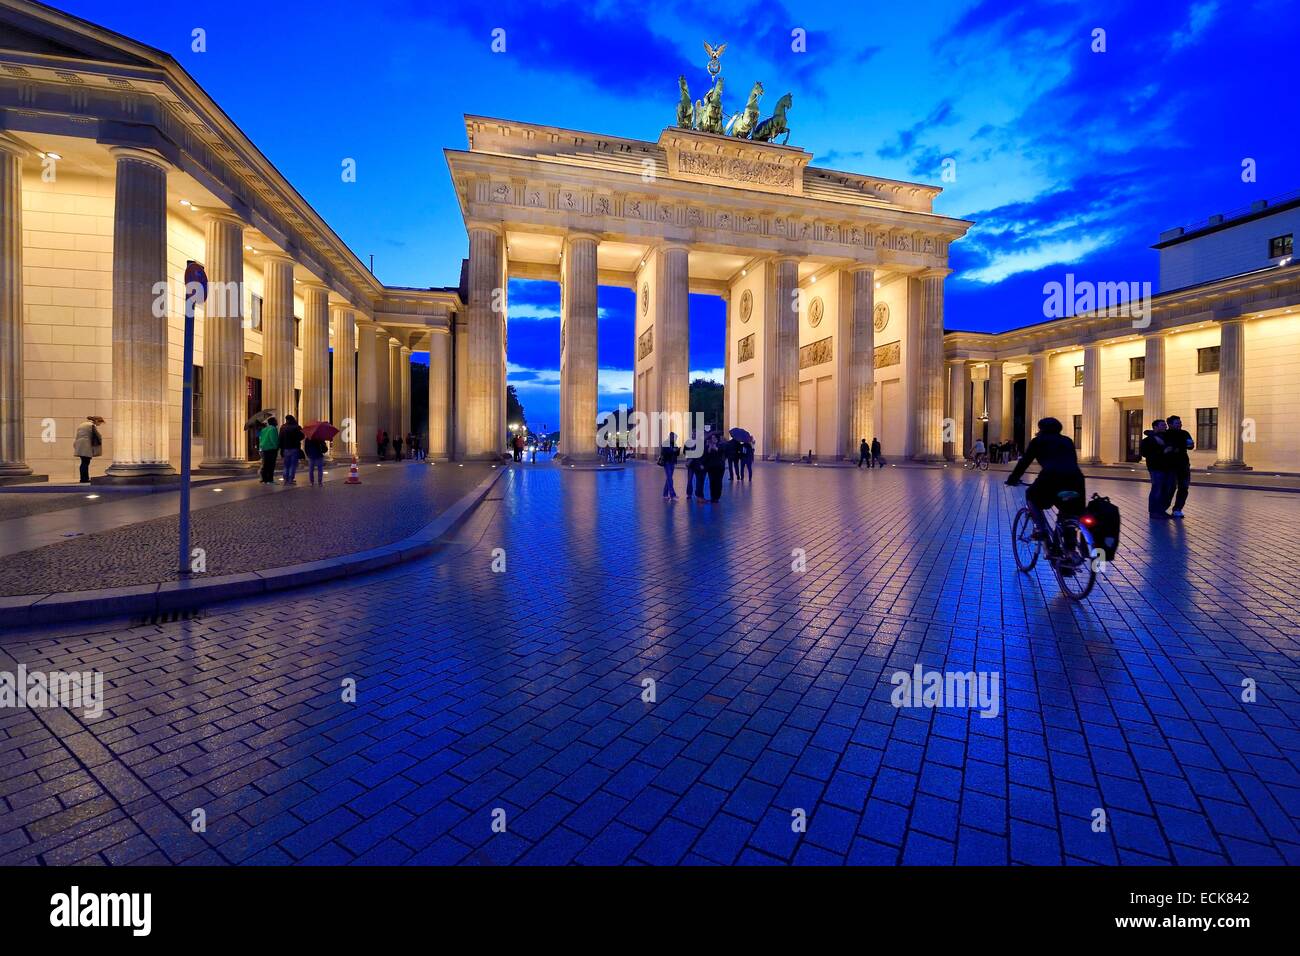 Germany, Berlin, Brandenburg Gate on the Under den Linden Avenue and Pariser platz Stock Photo